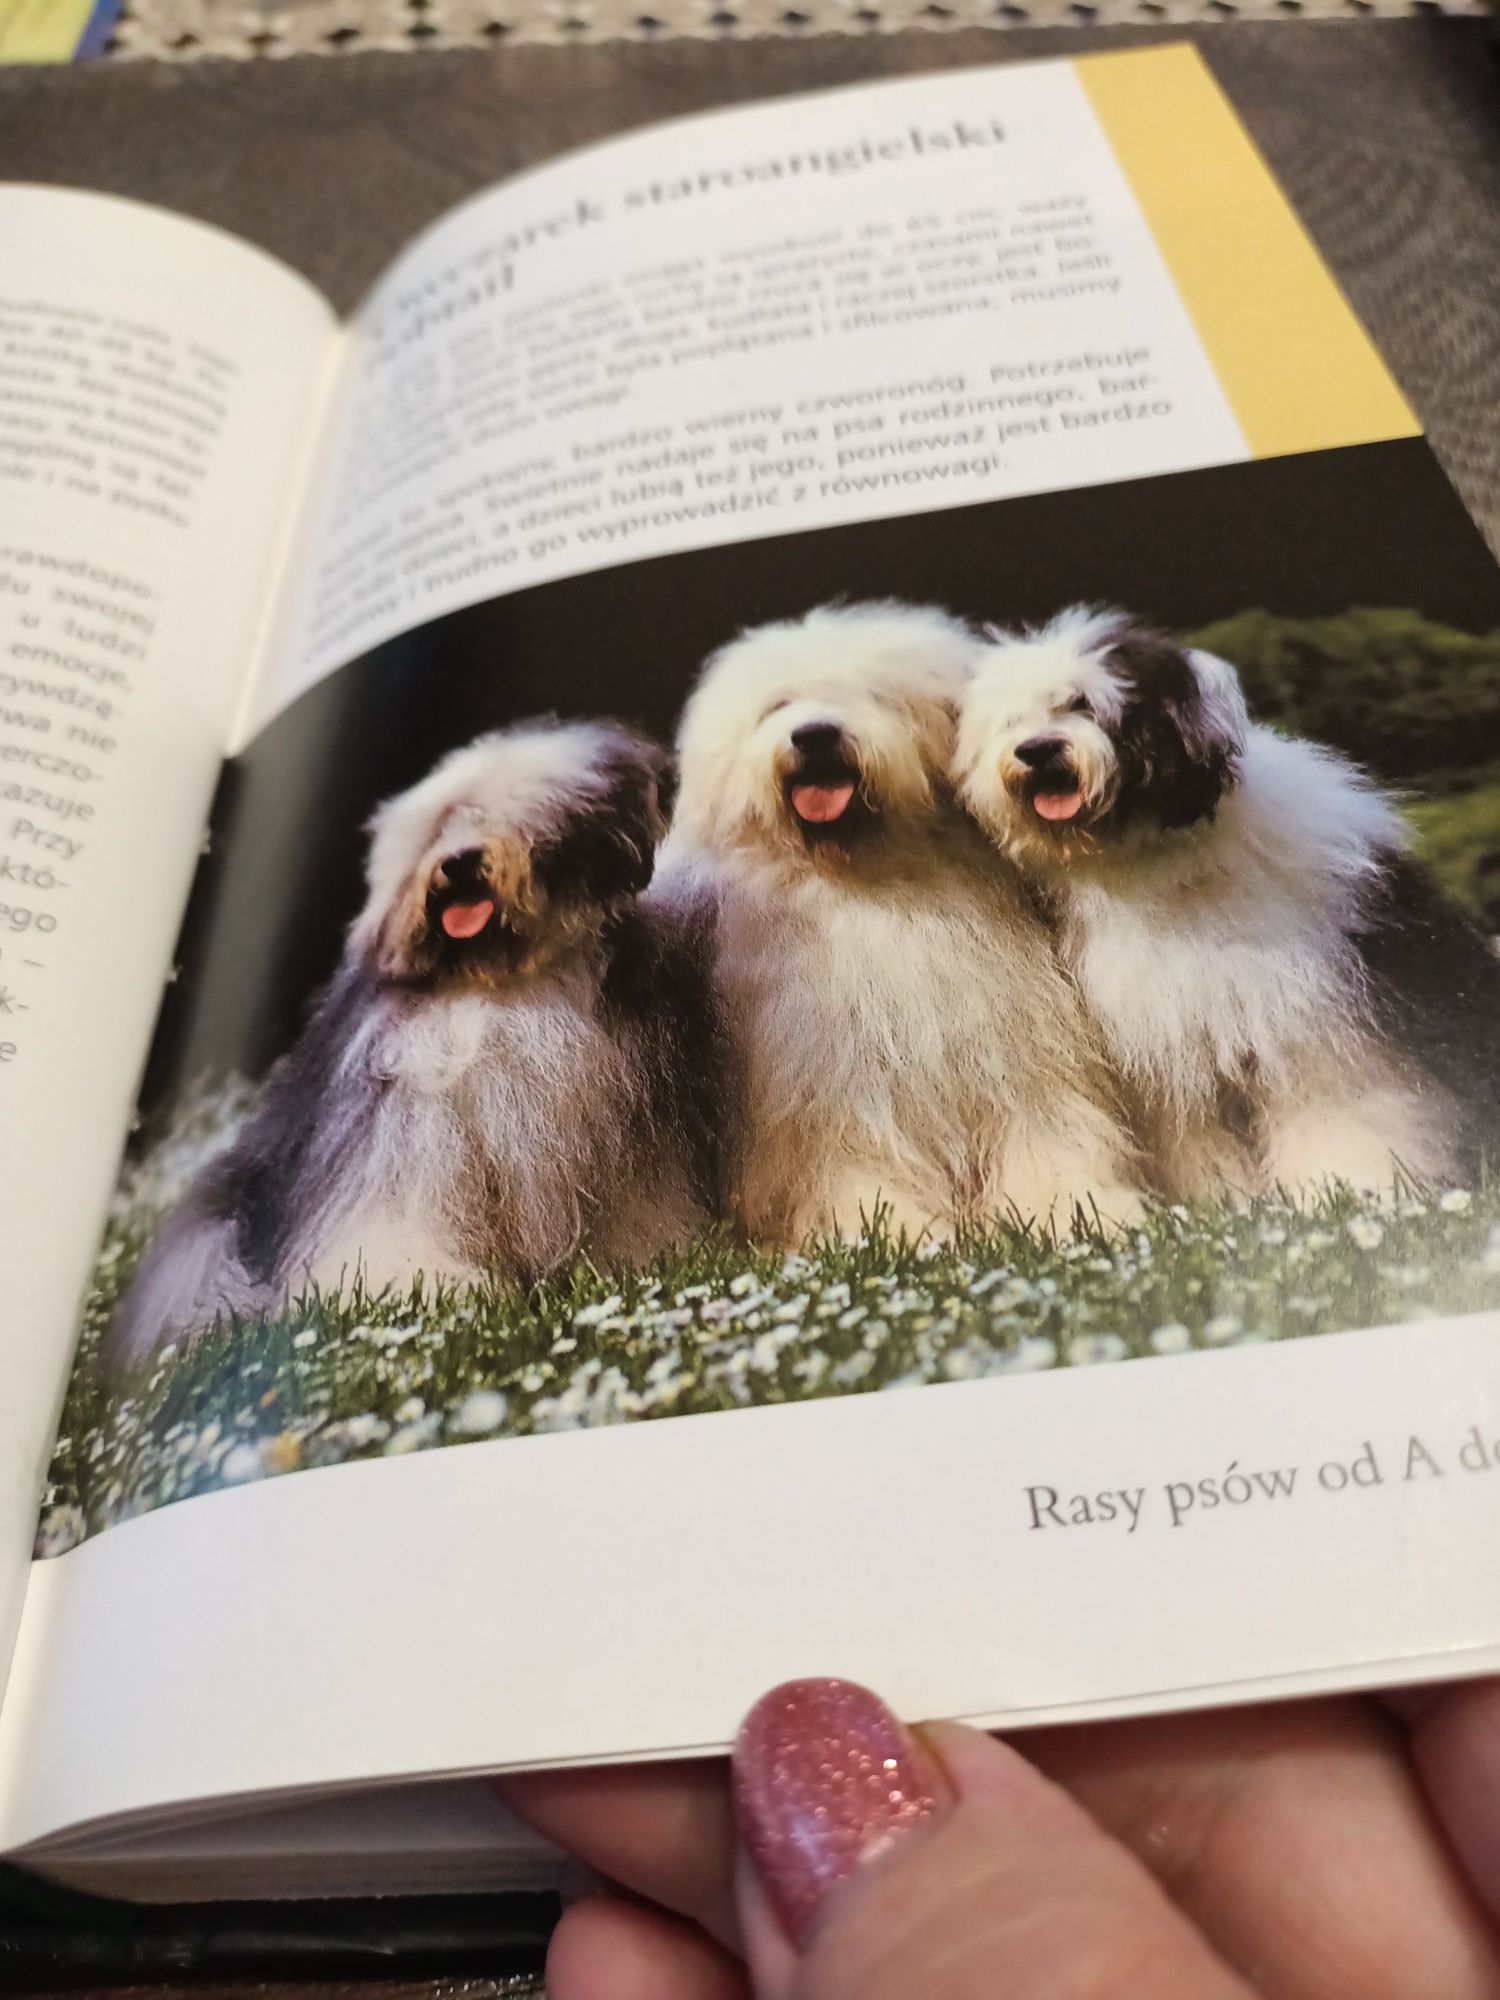 Rasy psów Hodowla książka